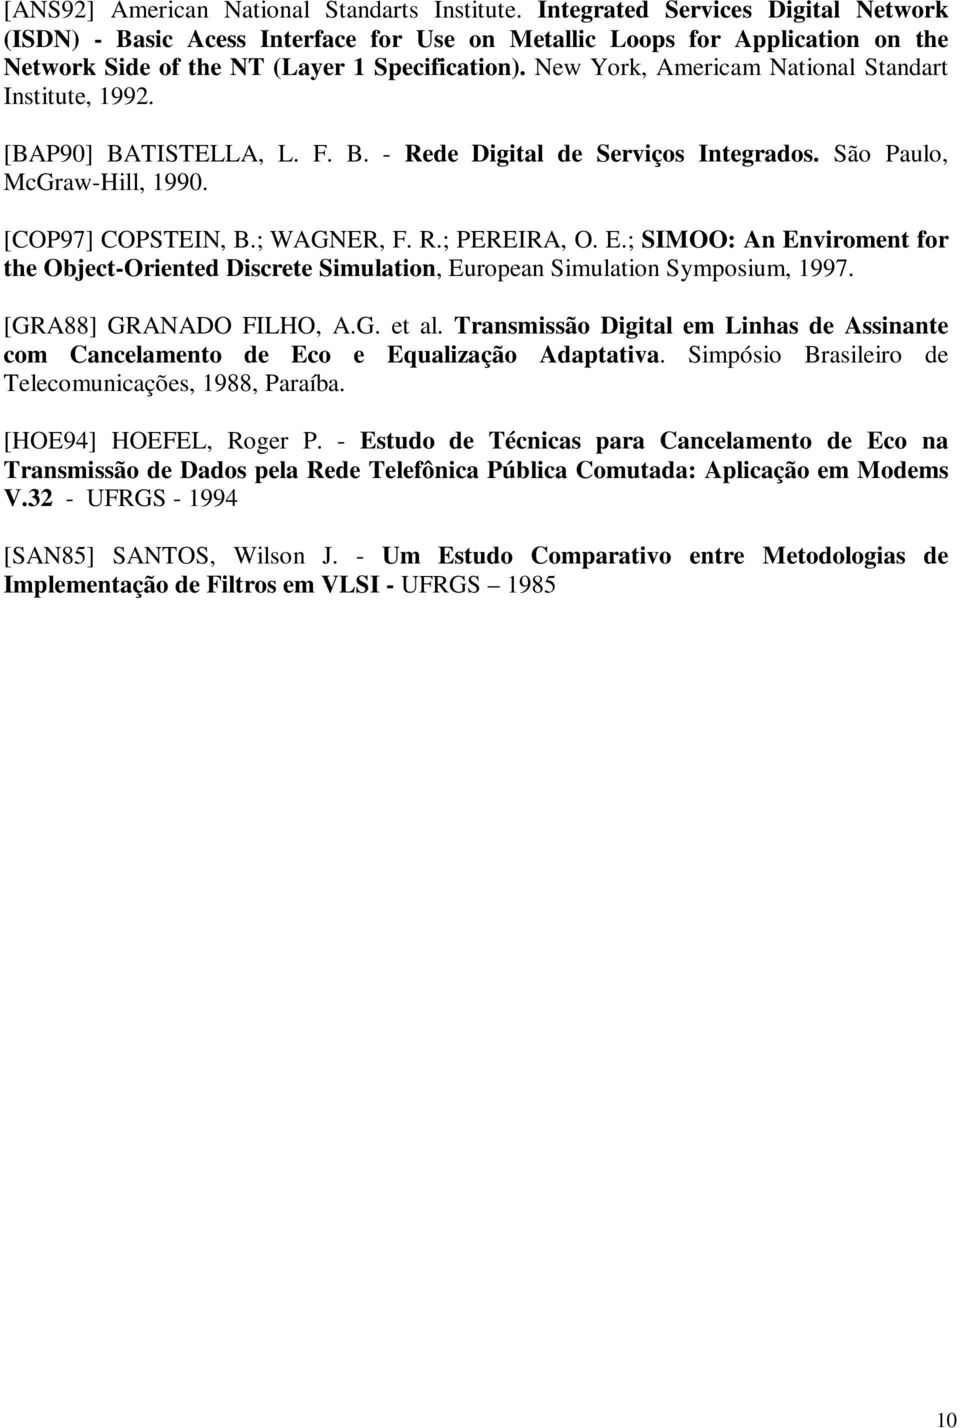 New York, Aerica National Standart Institute, 1992. [BAP90] BATISTELLA, L. F. B. - Rede Digital de Serviços Integrados. São Paulo, McGraw-Hill, 1990. [COP97] COPSTEIN, B.; WAGNER, F. R.; PEREIRA, O.